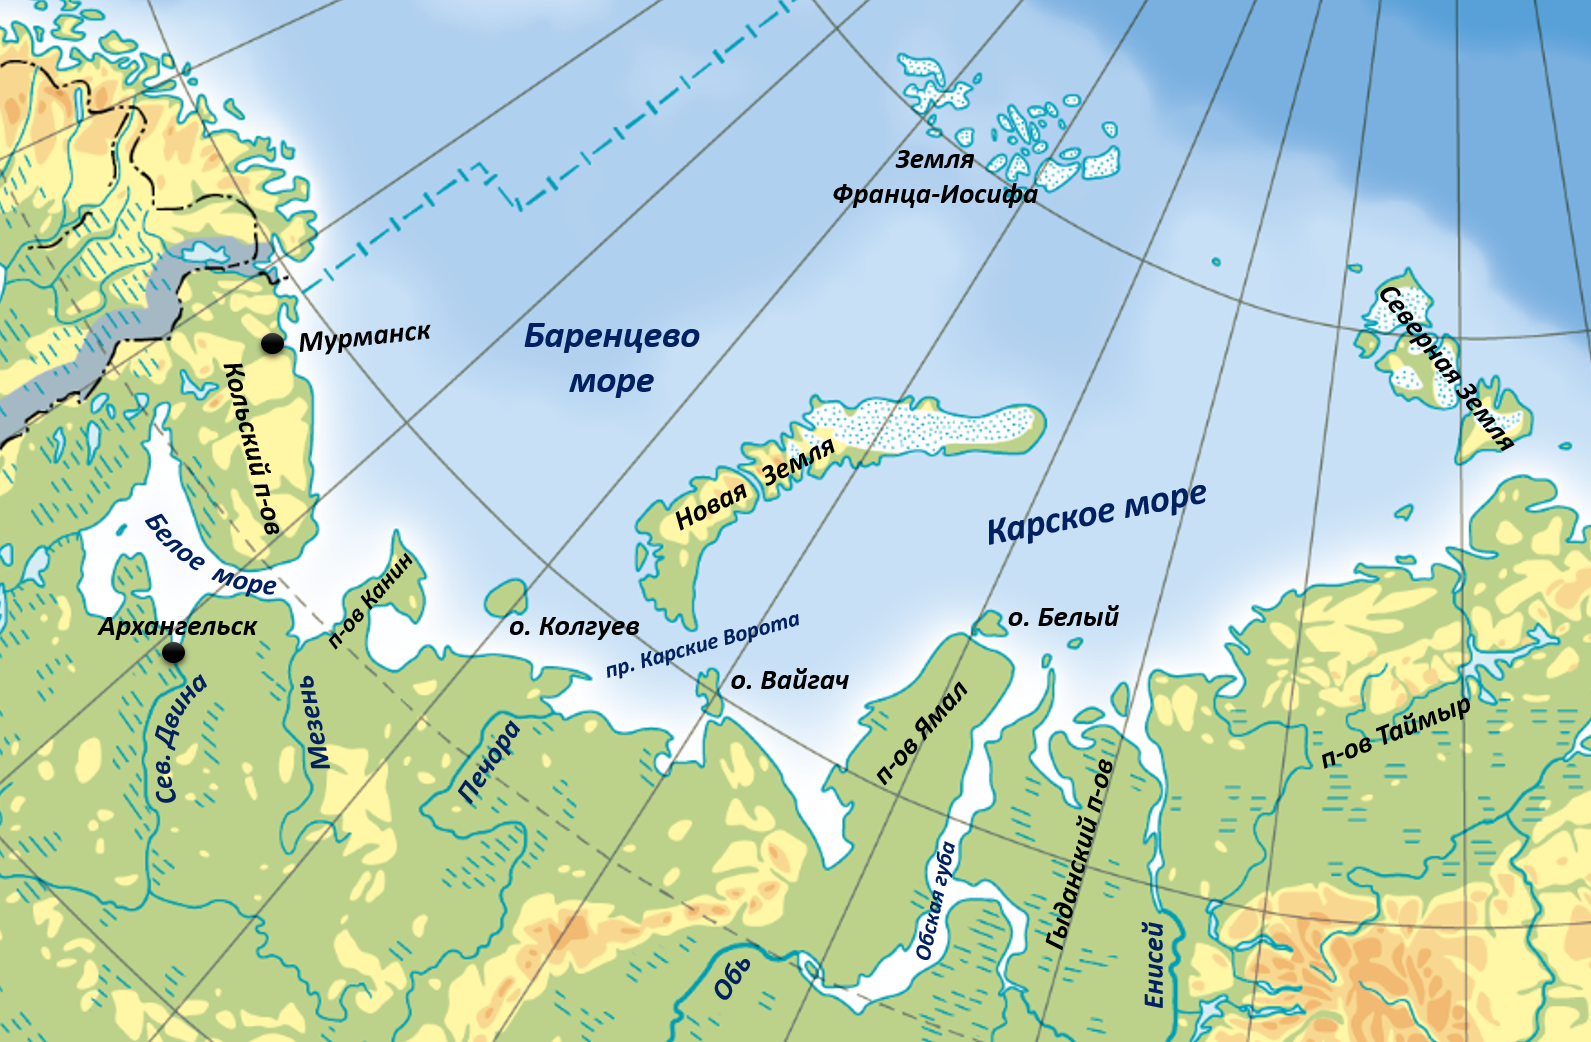 Баренцево море на карте. Баренцево море и Карское море на карте. Баренцево море и Северный Ледовитый. Остров белый в Карском море. Карта островов баренцева моря